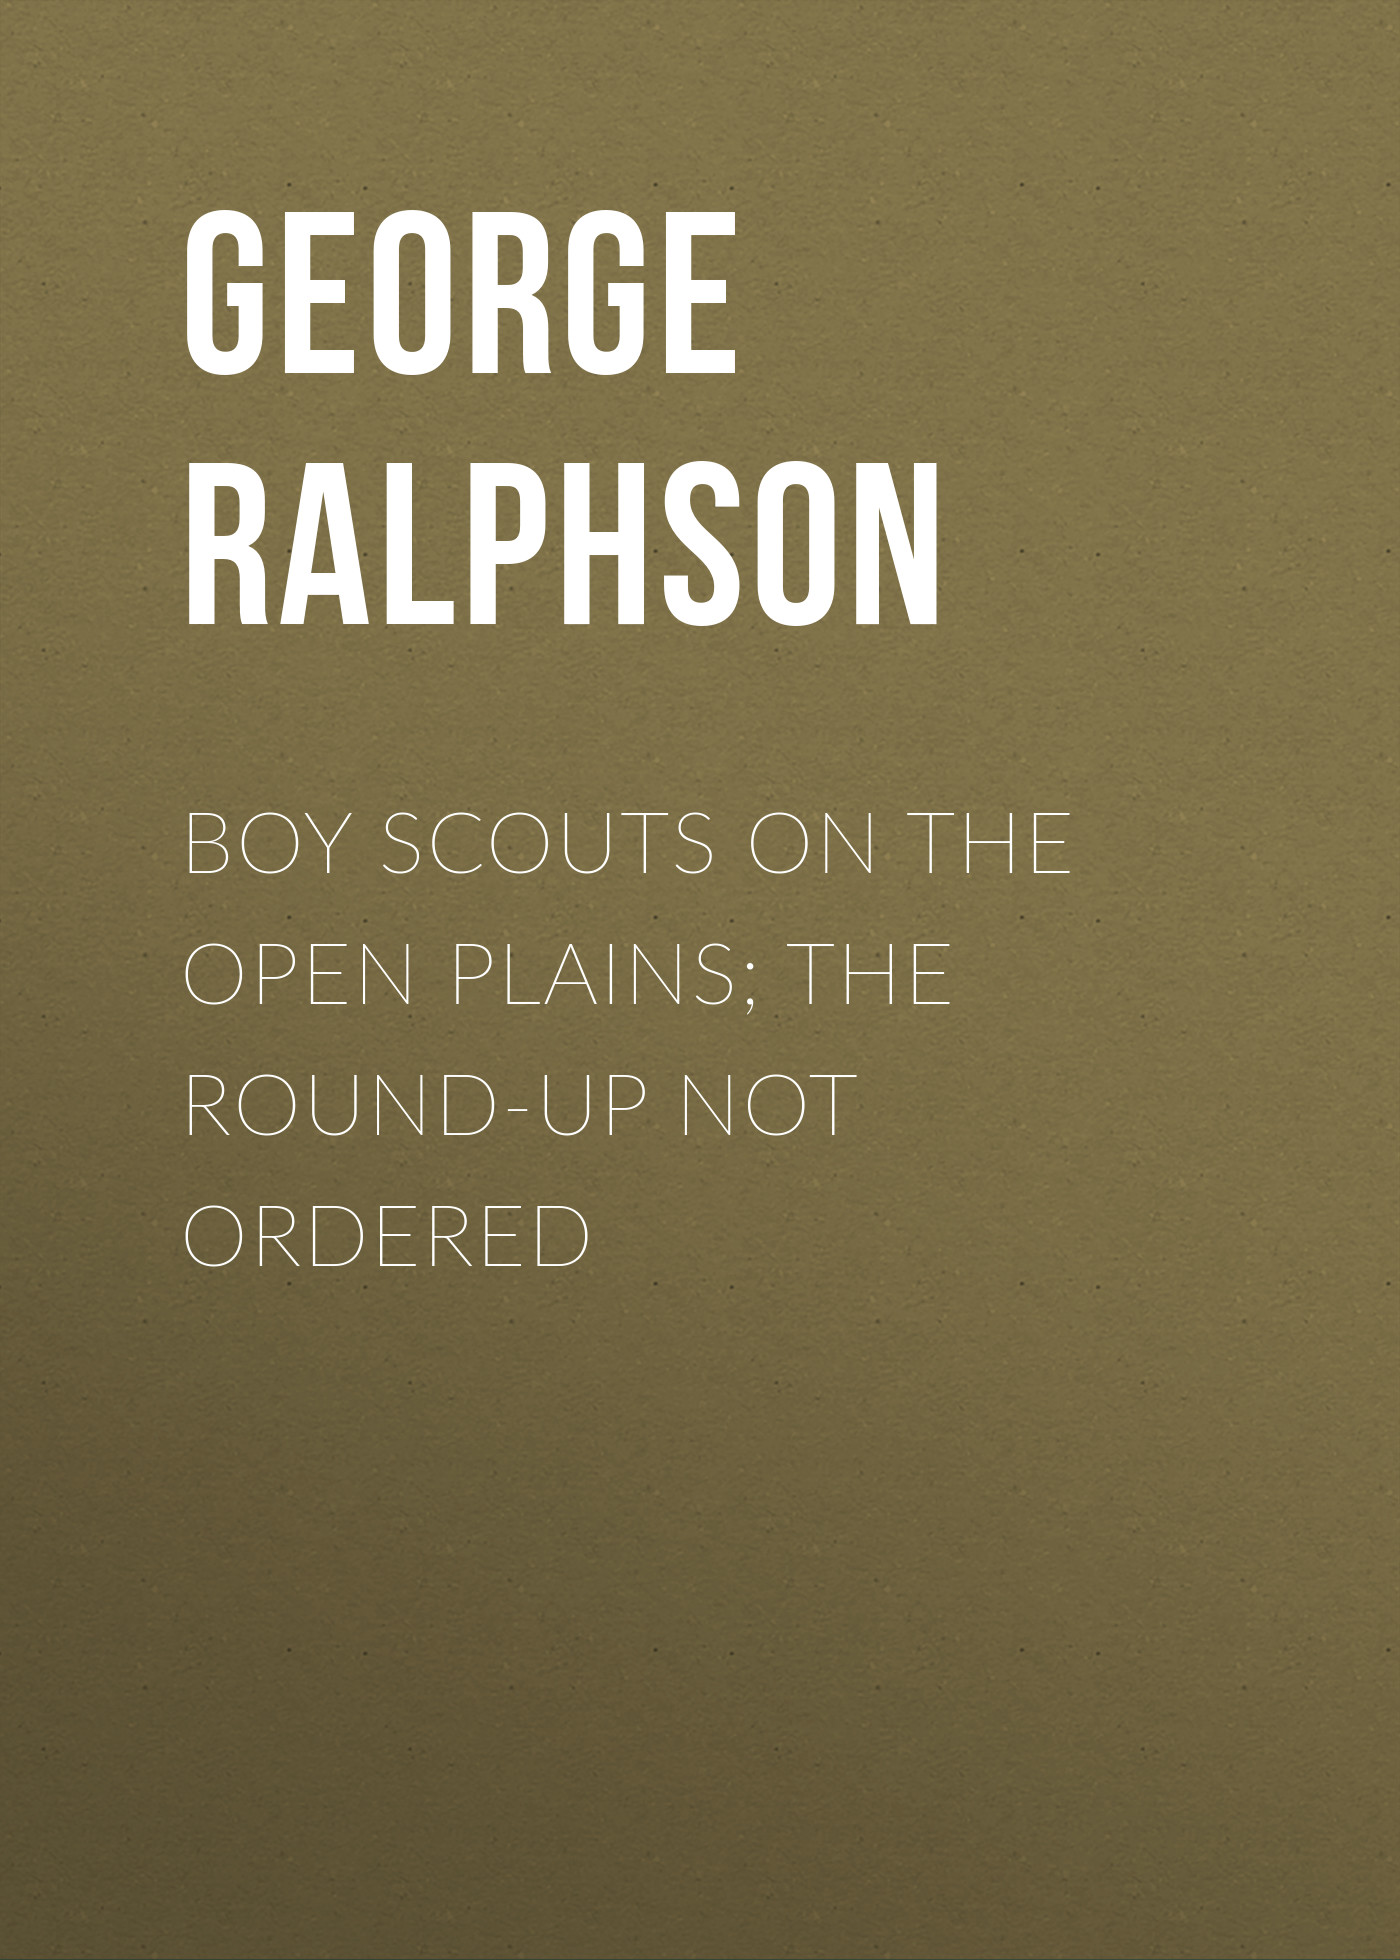 Книга Boy Scouts on the Open Plains; The Round-Up Not Ordered из серии , созданная George Ralphson, может относится к жанру Иностранные языки, Зарубежная классика. Стоимость электронной книги Boy Scouts on the Open Plains; The Round-Up Not Ordered с идентификатором 23162595 составляет 5.99 руб.